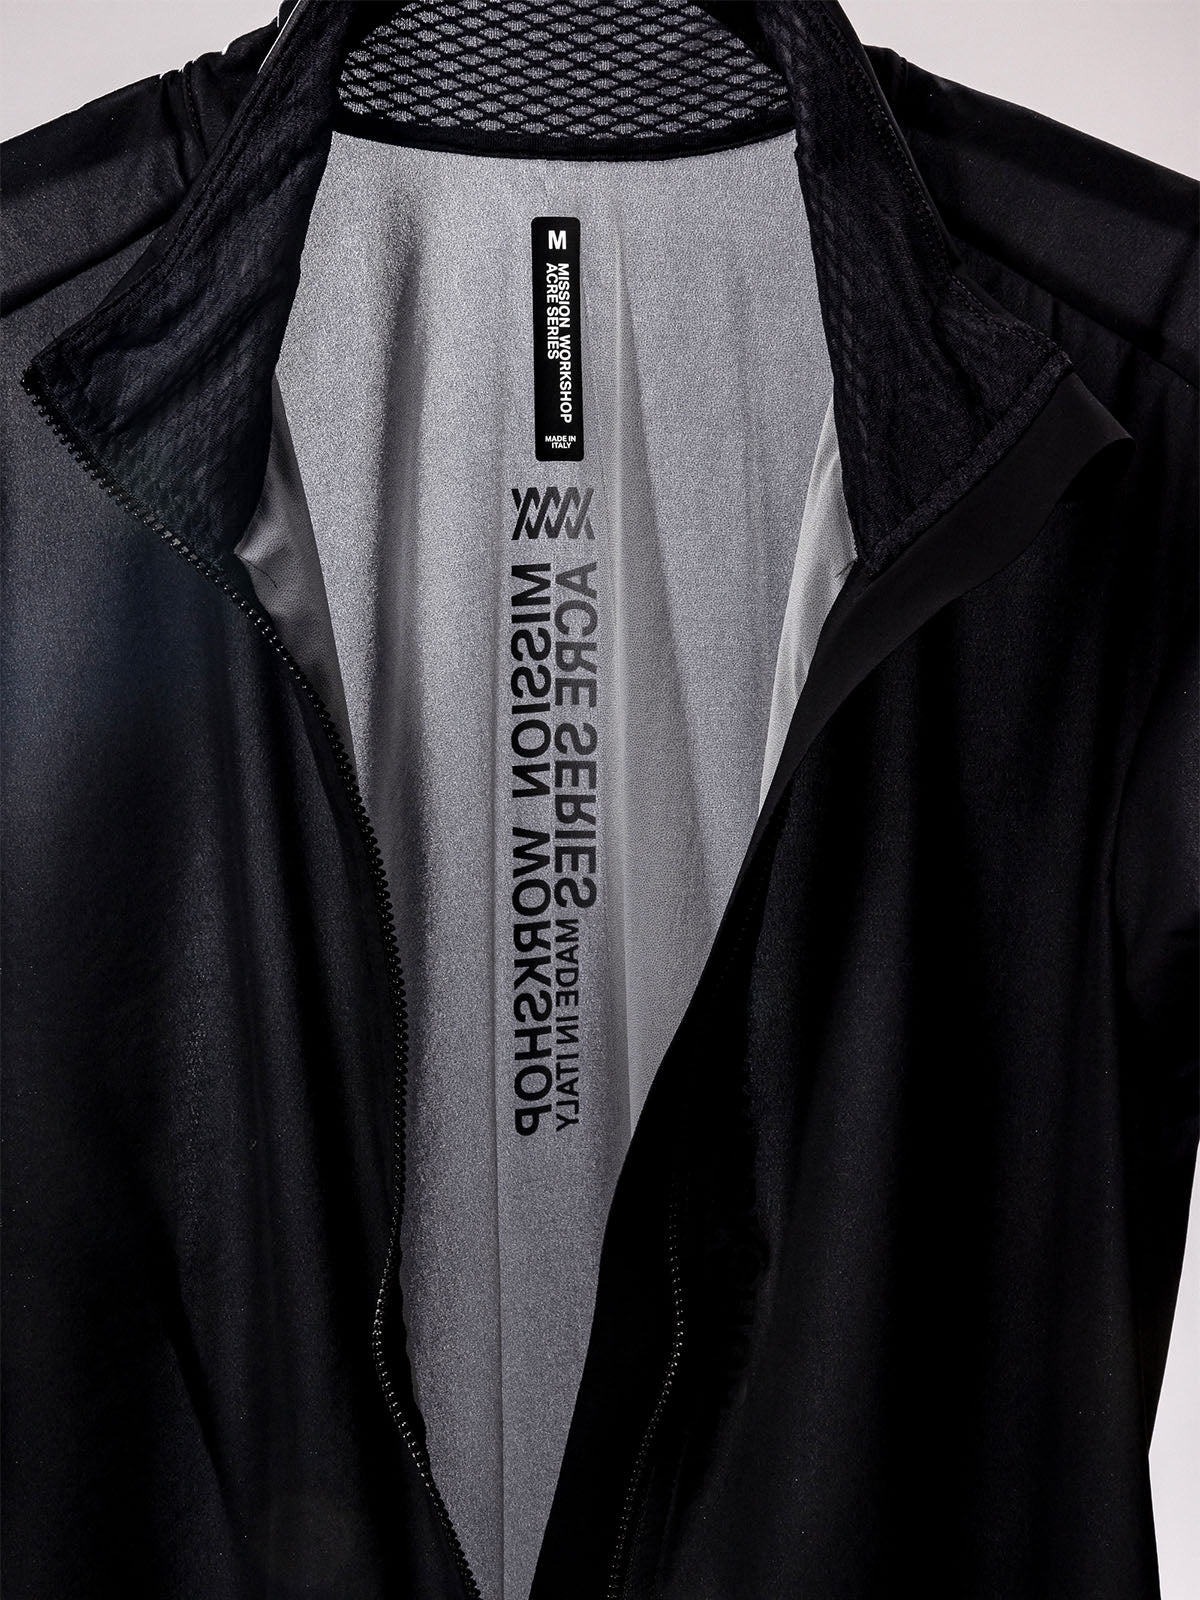 Altosphere Jacket by Mission Workshop - Weatherproof Bags & Technical Apparel - San Francisco & Los Angeles - Construit pour durer - Garanti pour toujours